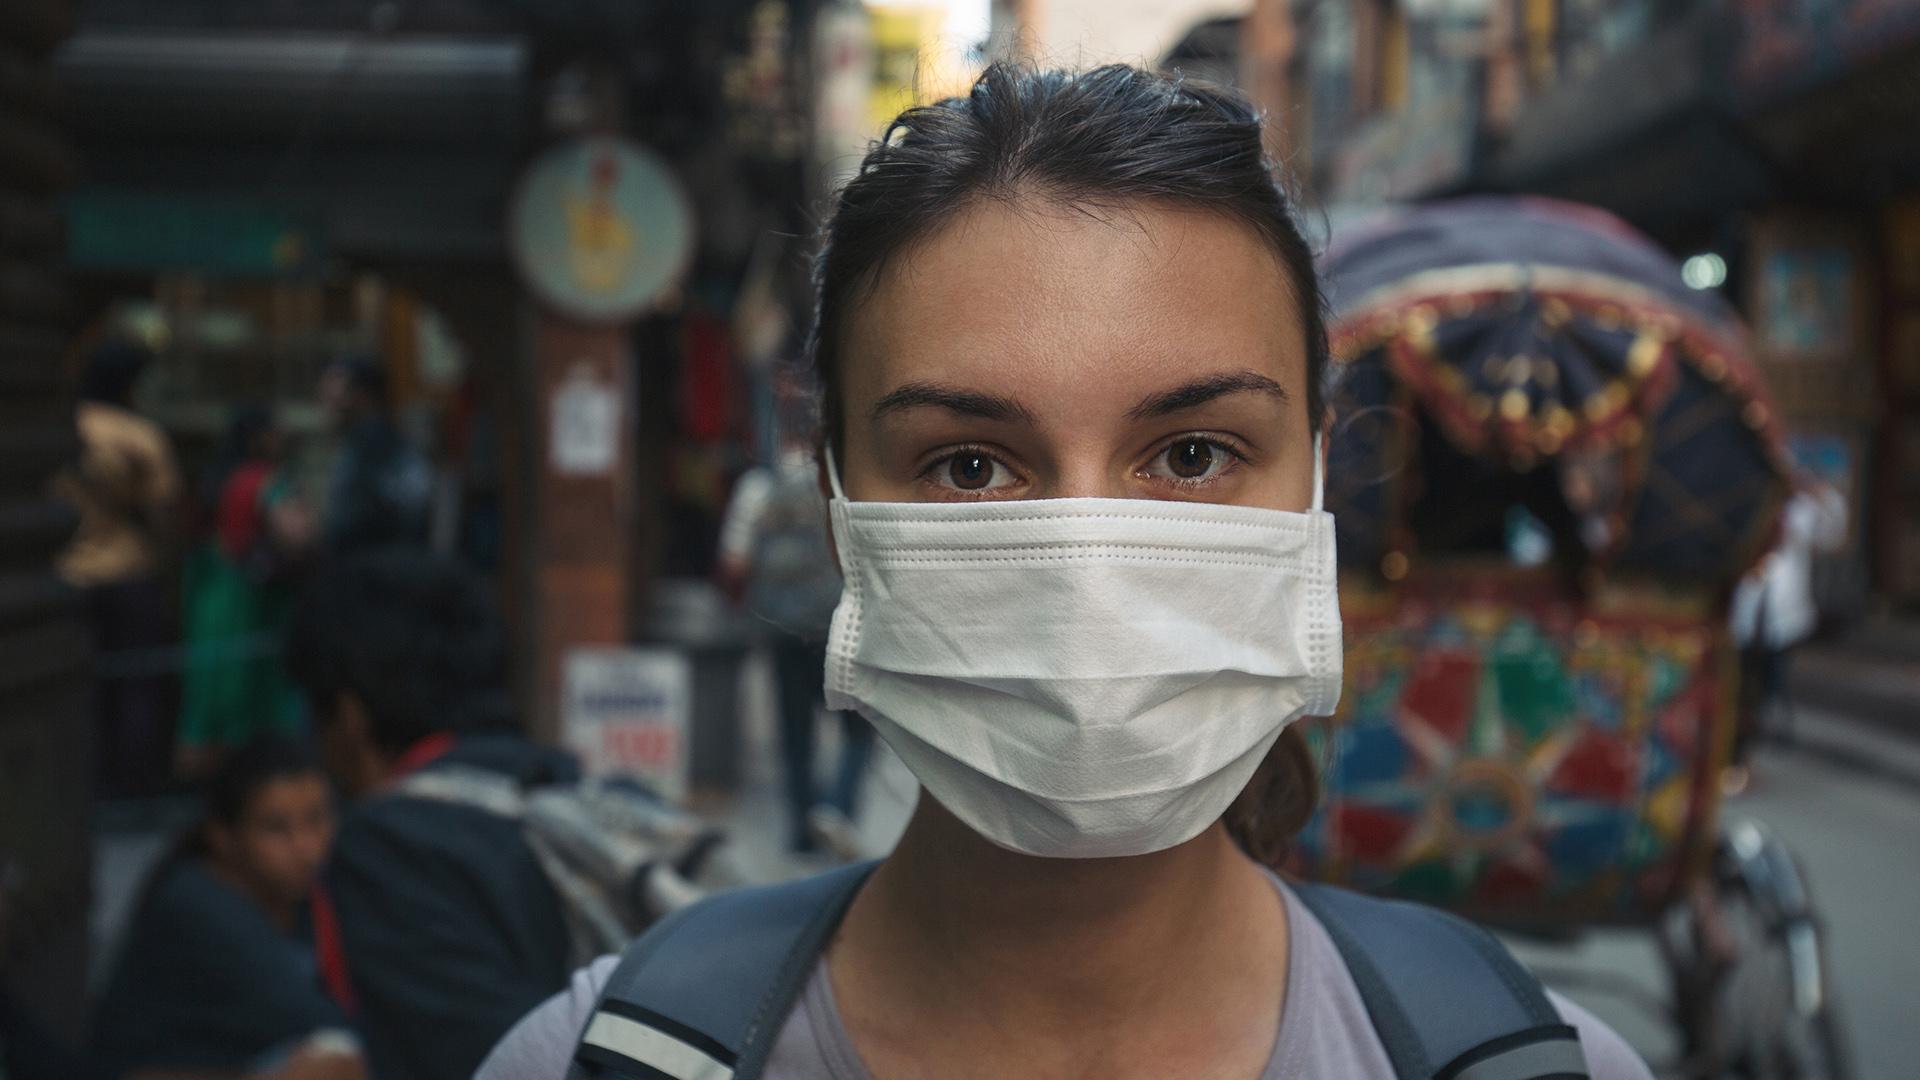 Κορονοϊός: Μεταδίδεται με την αναπνοή σύμφωνα με την Εθνική Ακαδημία Επιστημών- Τι γίνεται με τις μάσκες;